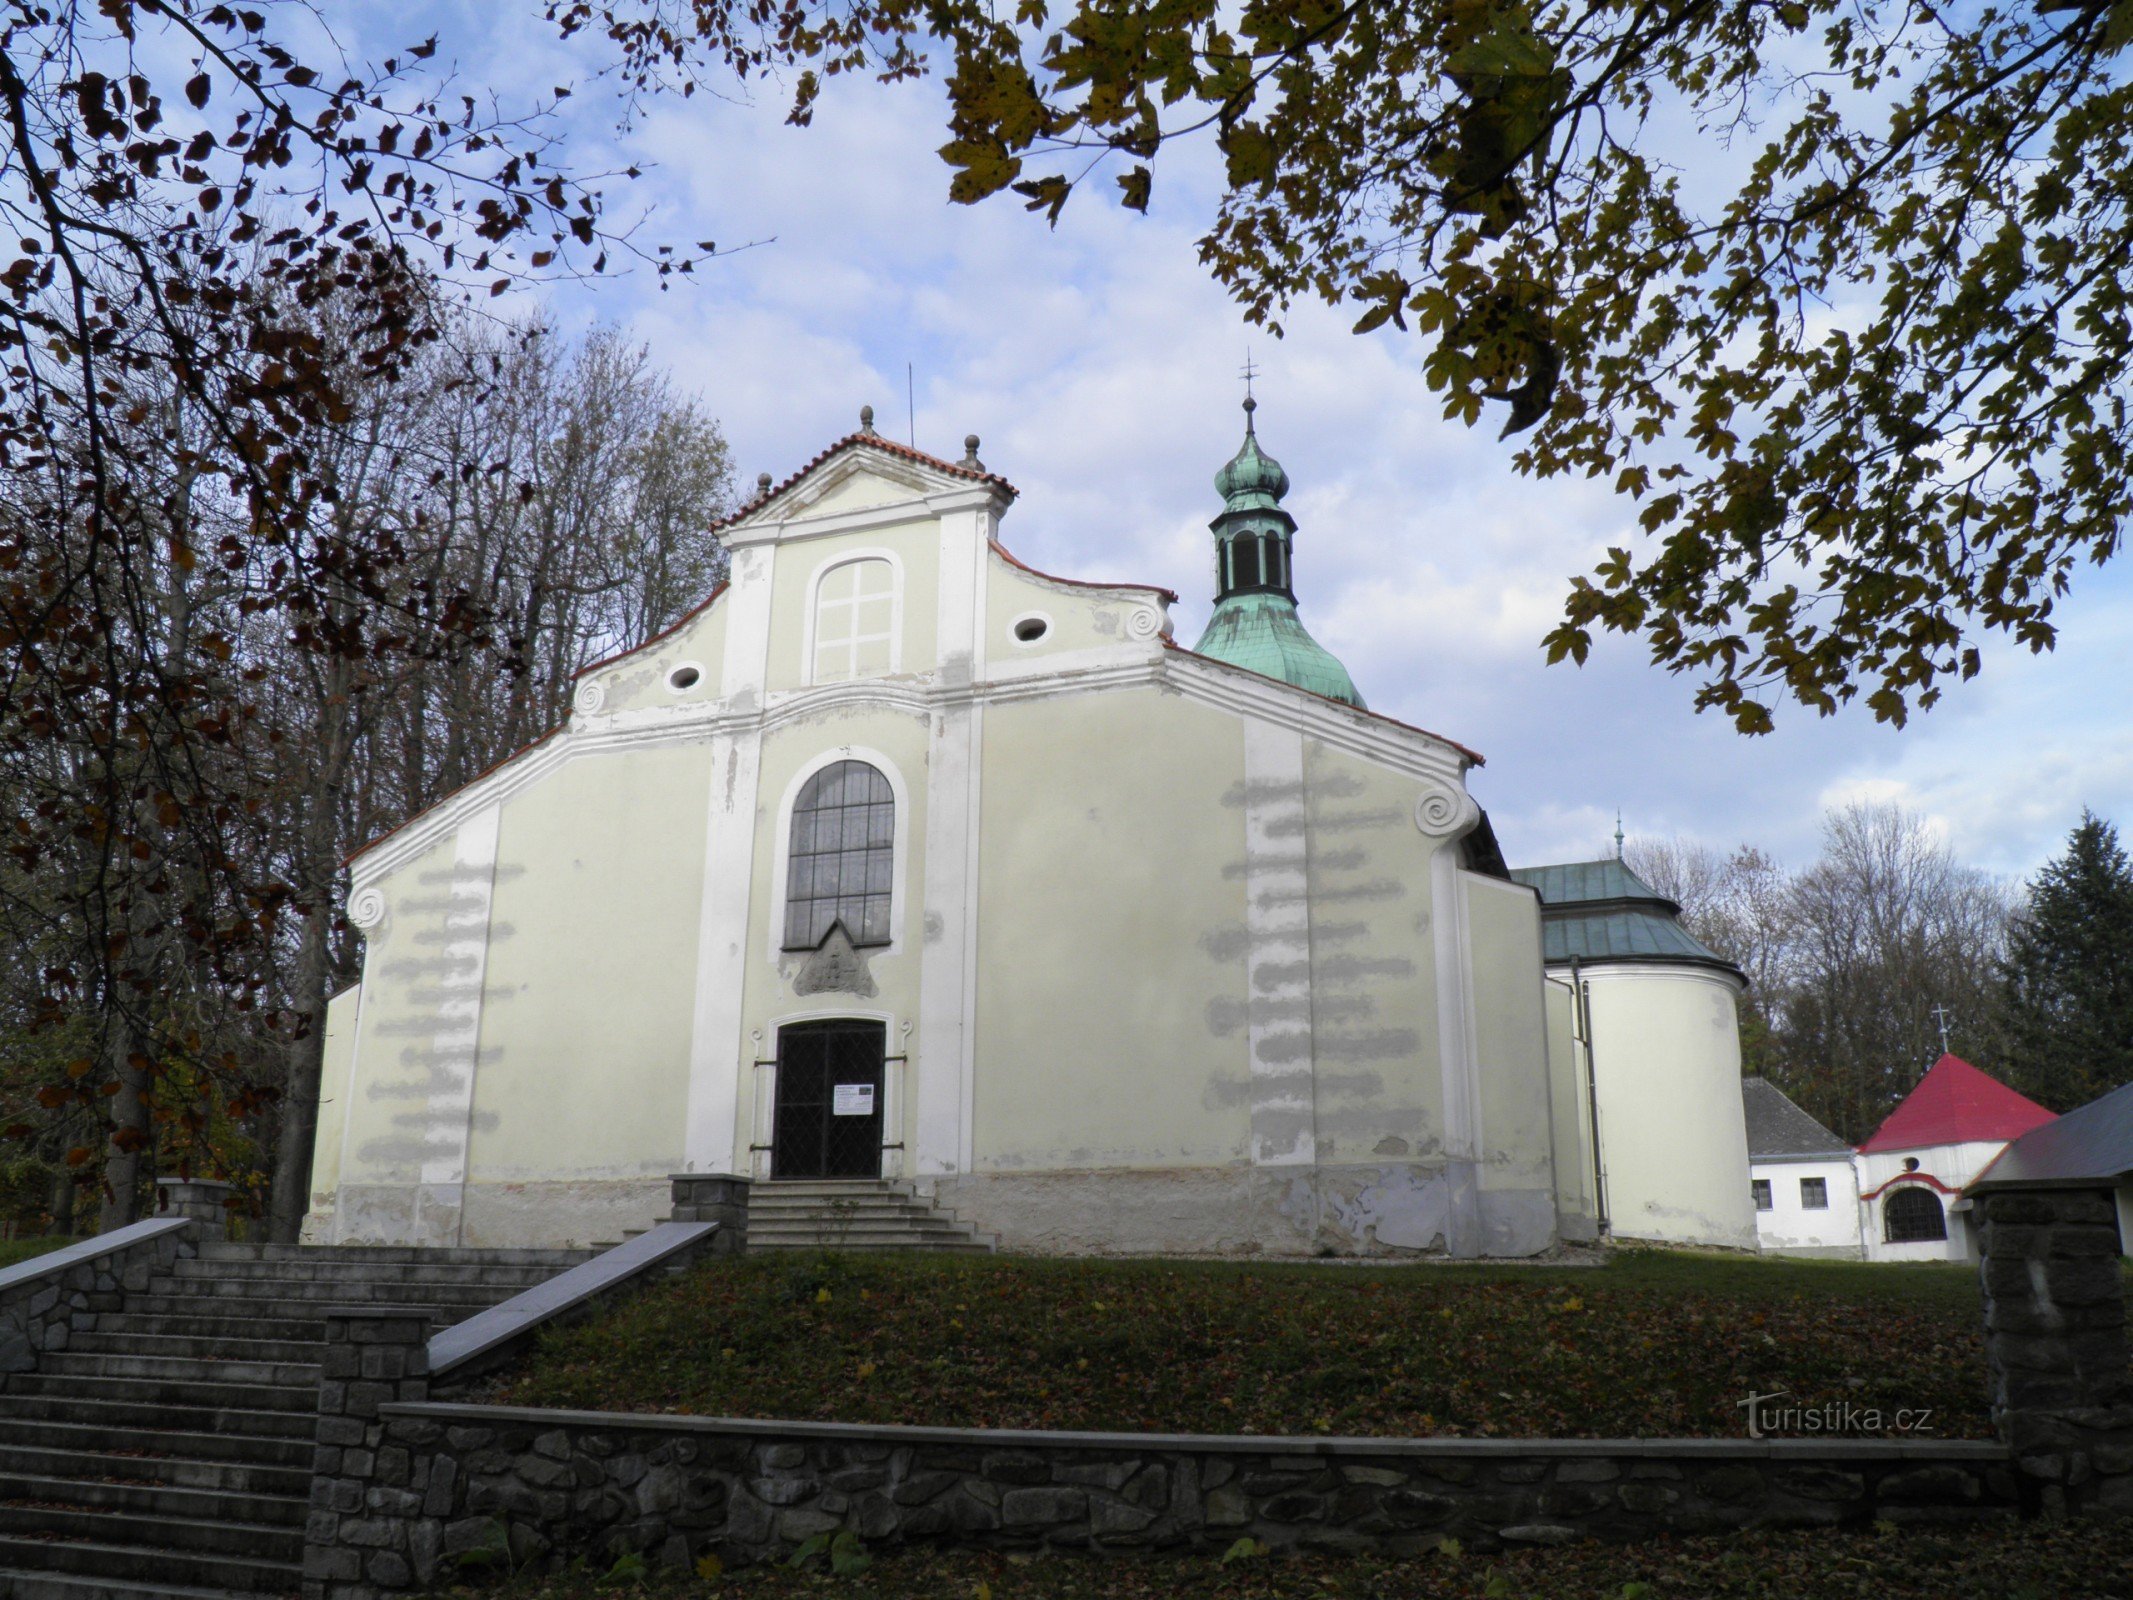 Προσκυνηματικός χώρος Křemešník με την εκκλησία της Αγίας Τριάδας και τους Σταθμούς του Σταυρού.